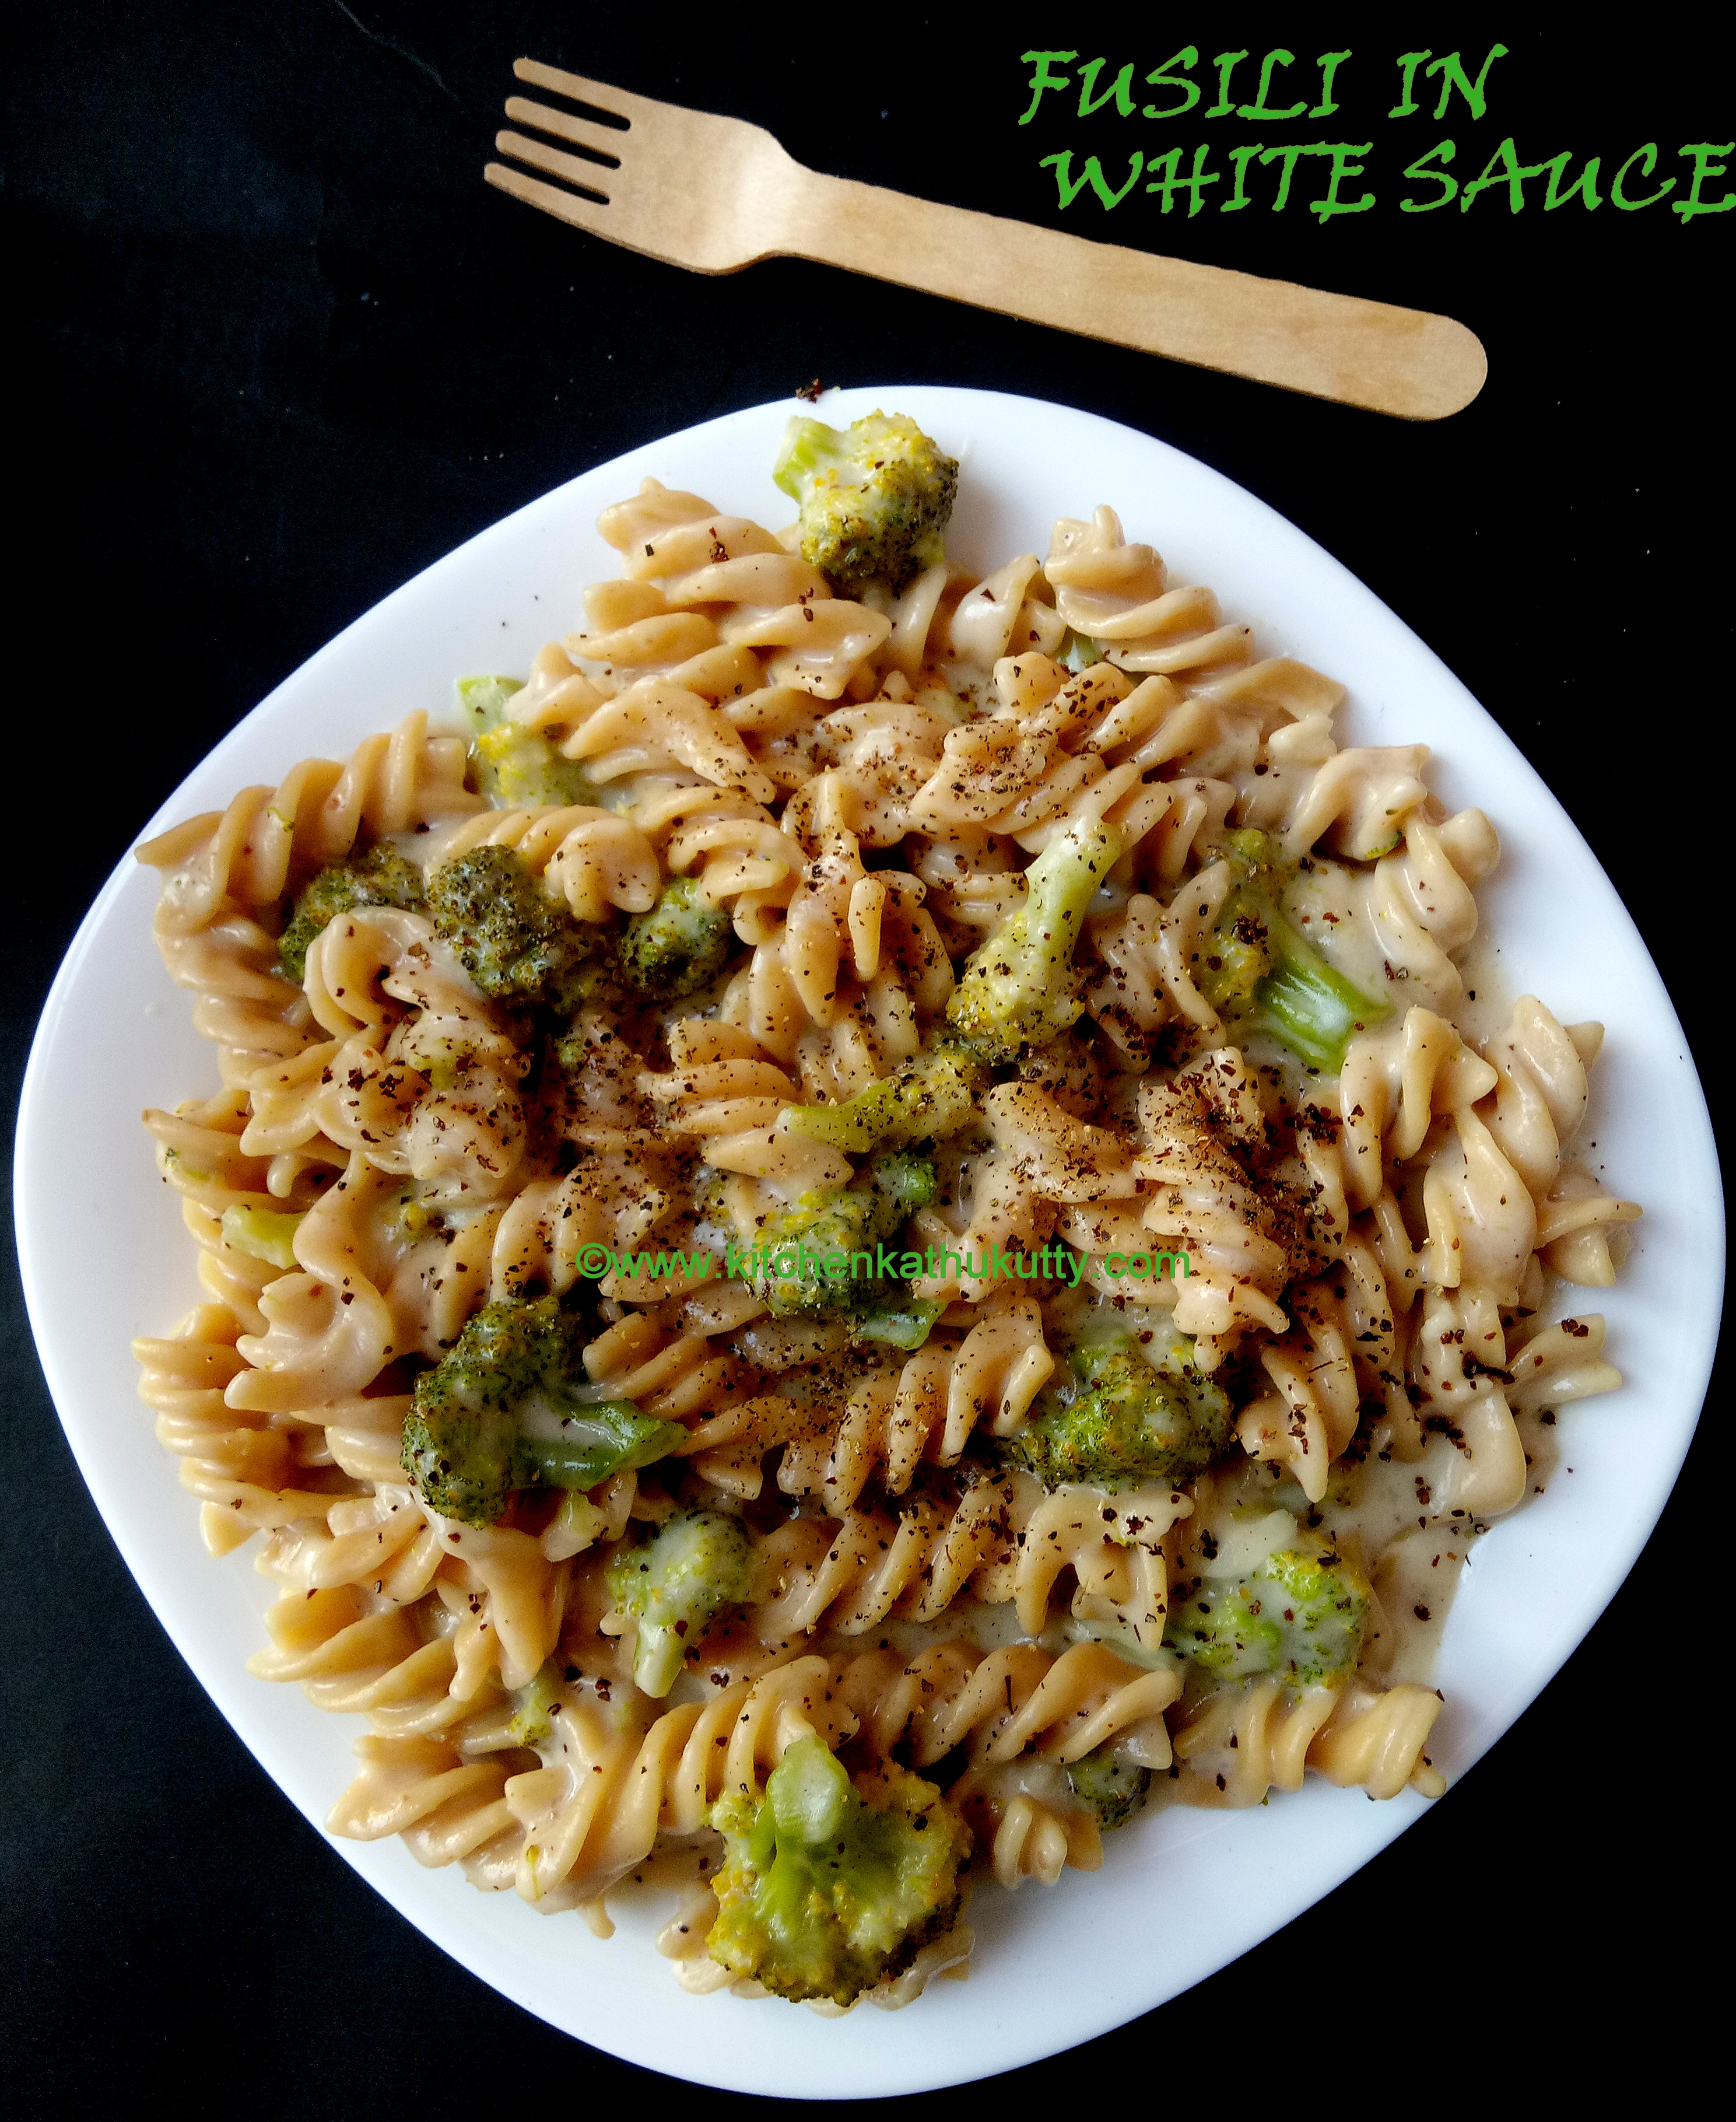 cheesy broccoli pasta